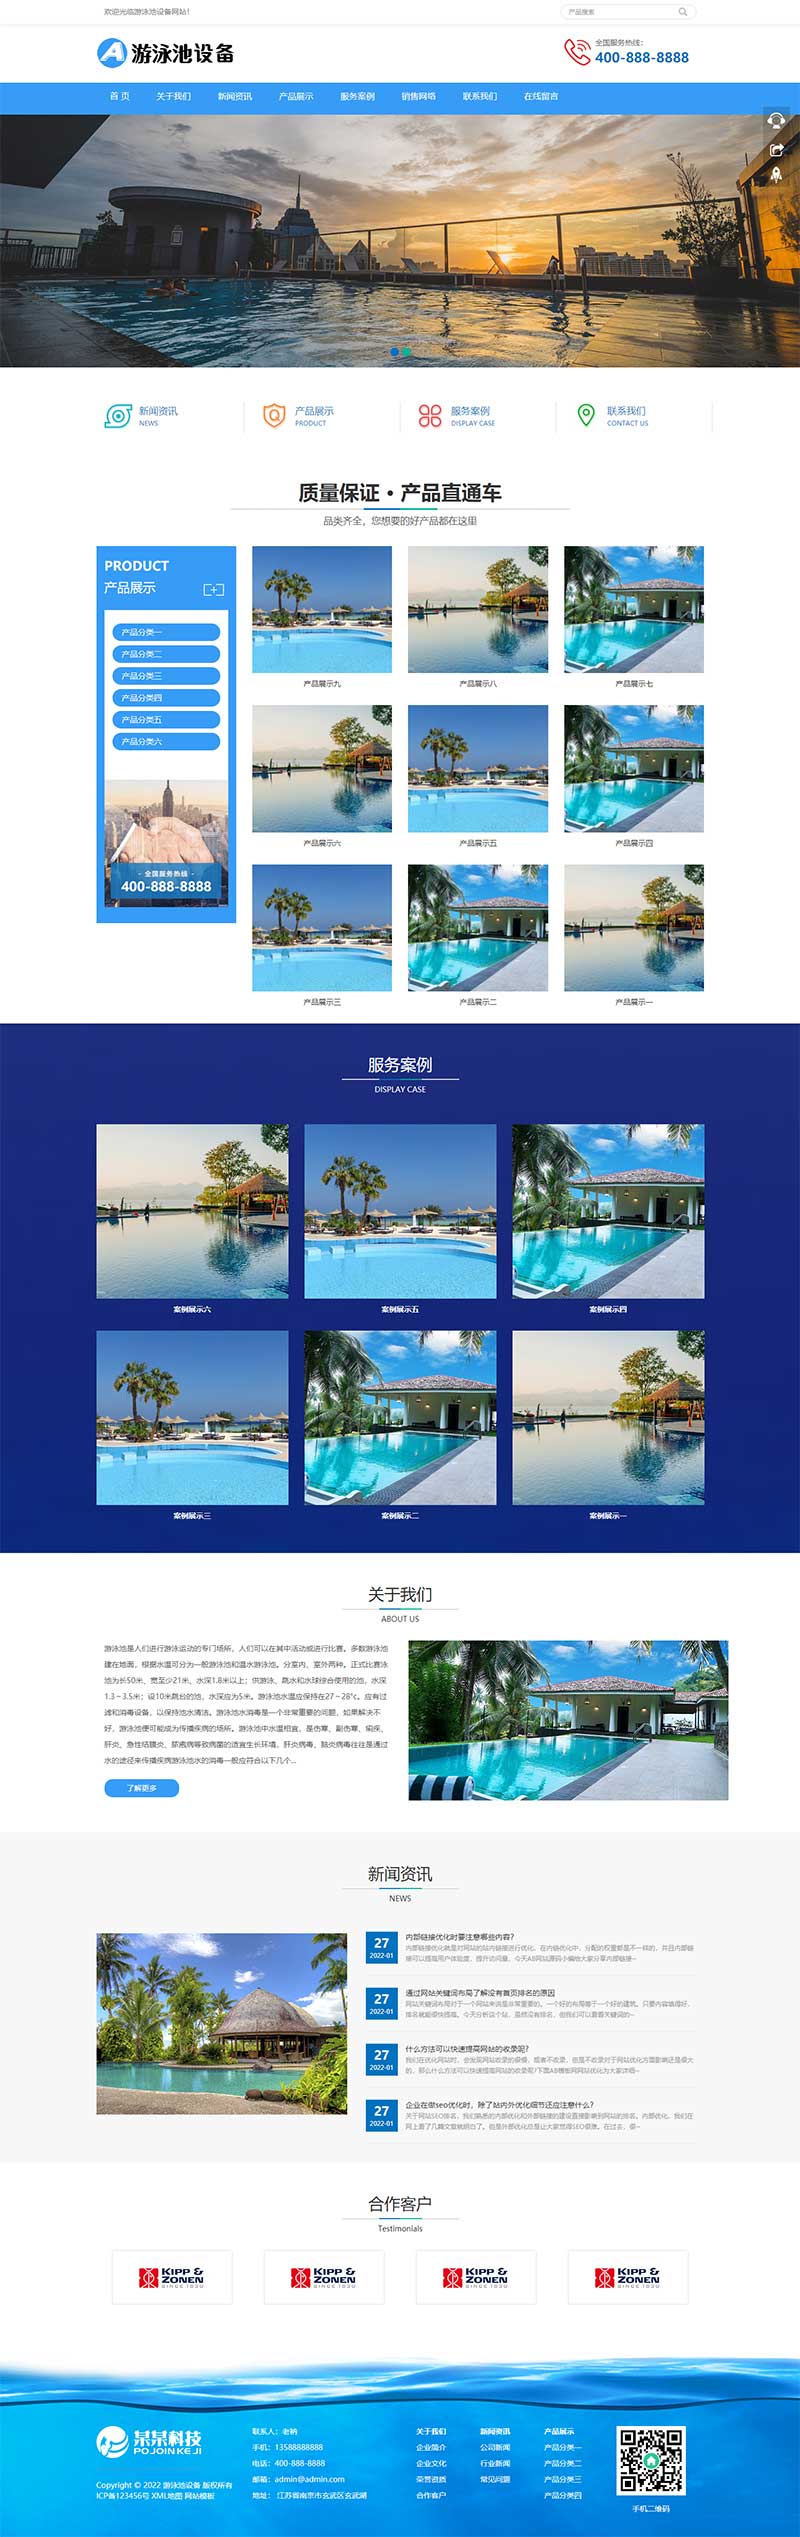 游泳馆泳池设备泳池水处理器WordPress网站模板演示图